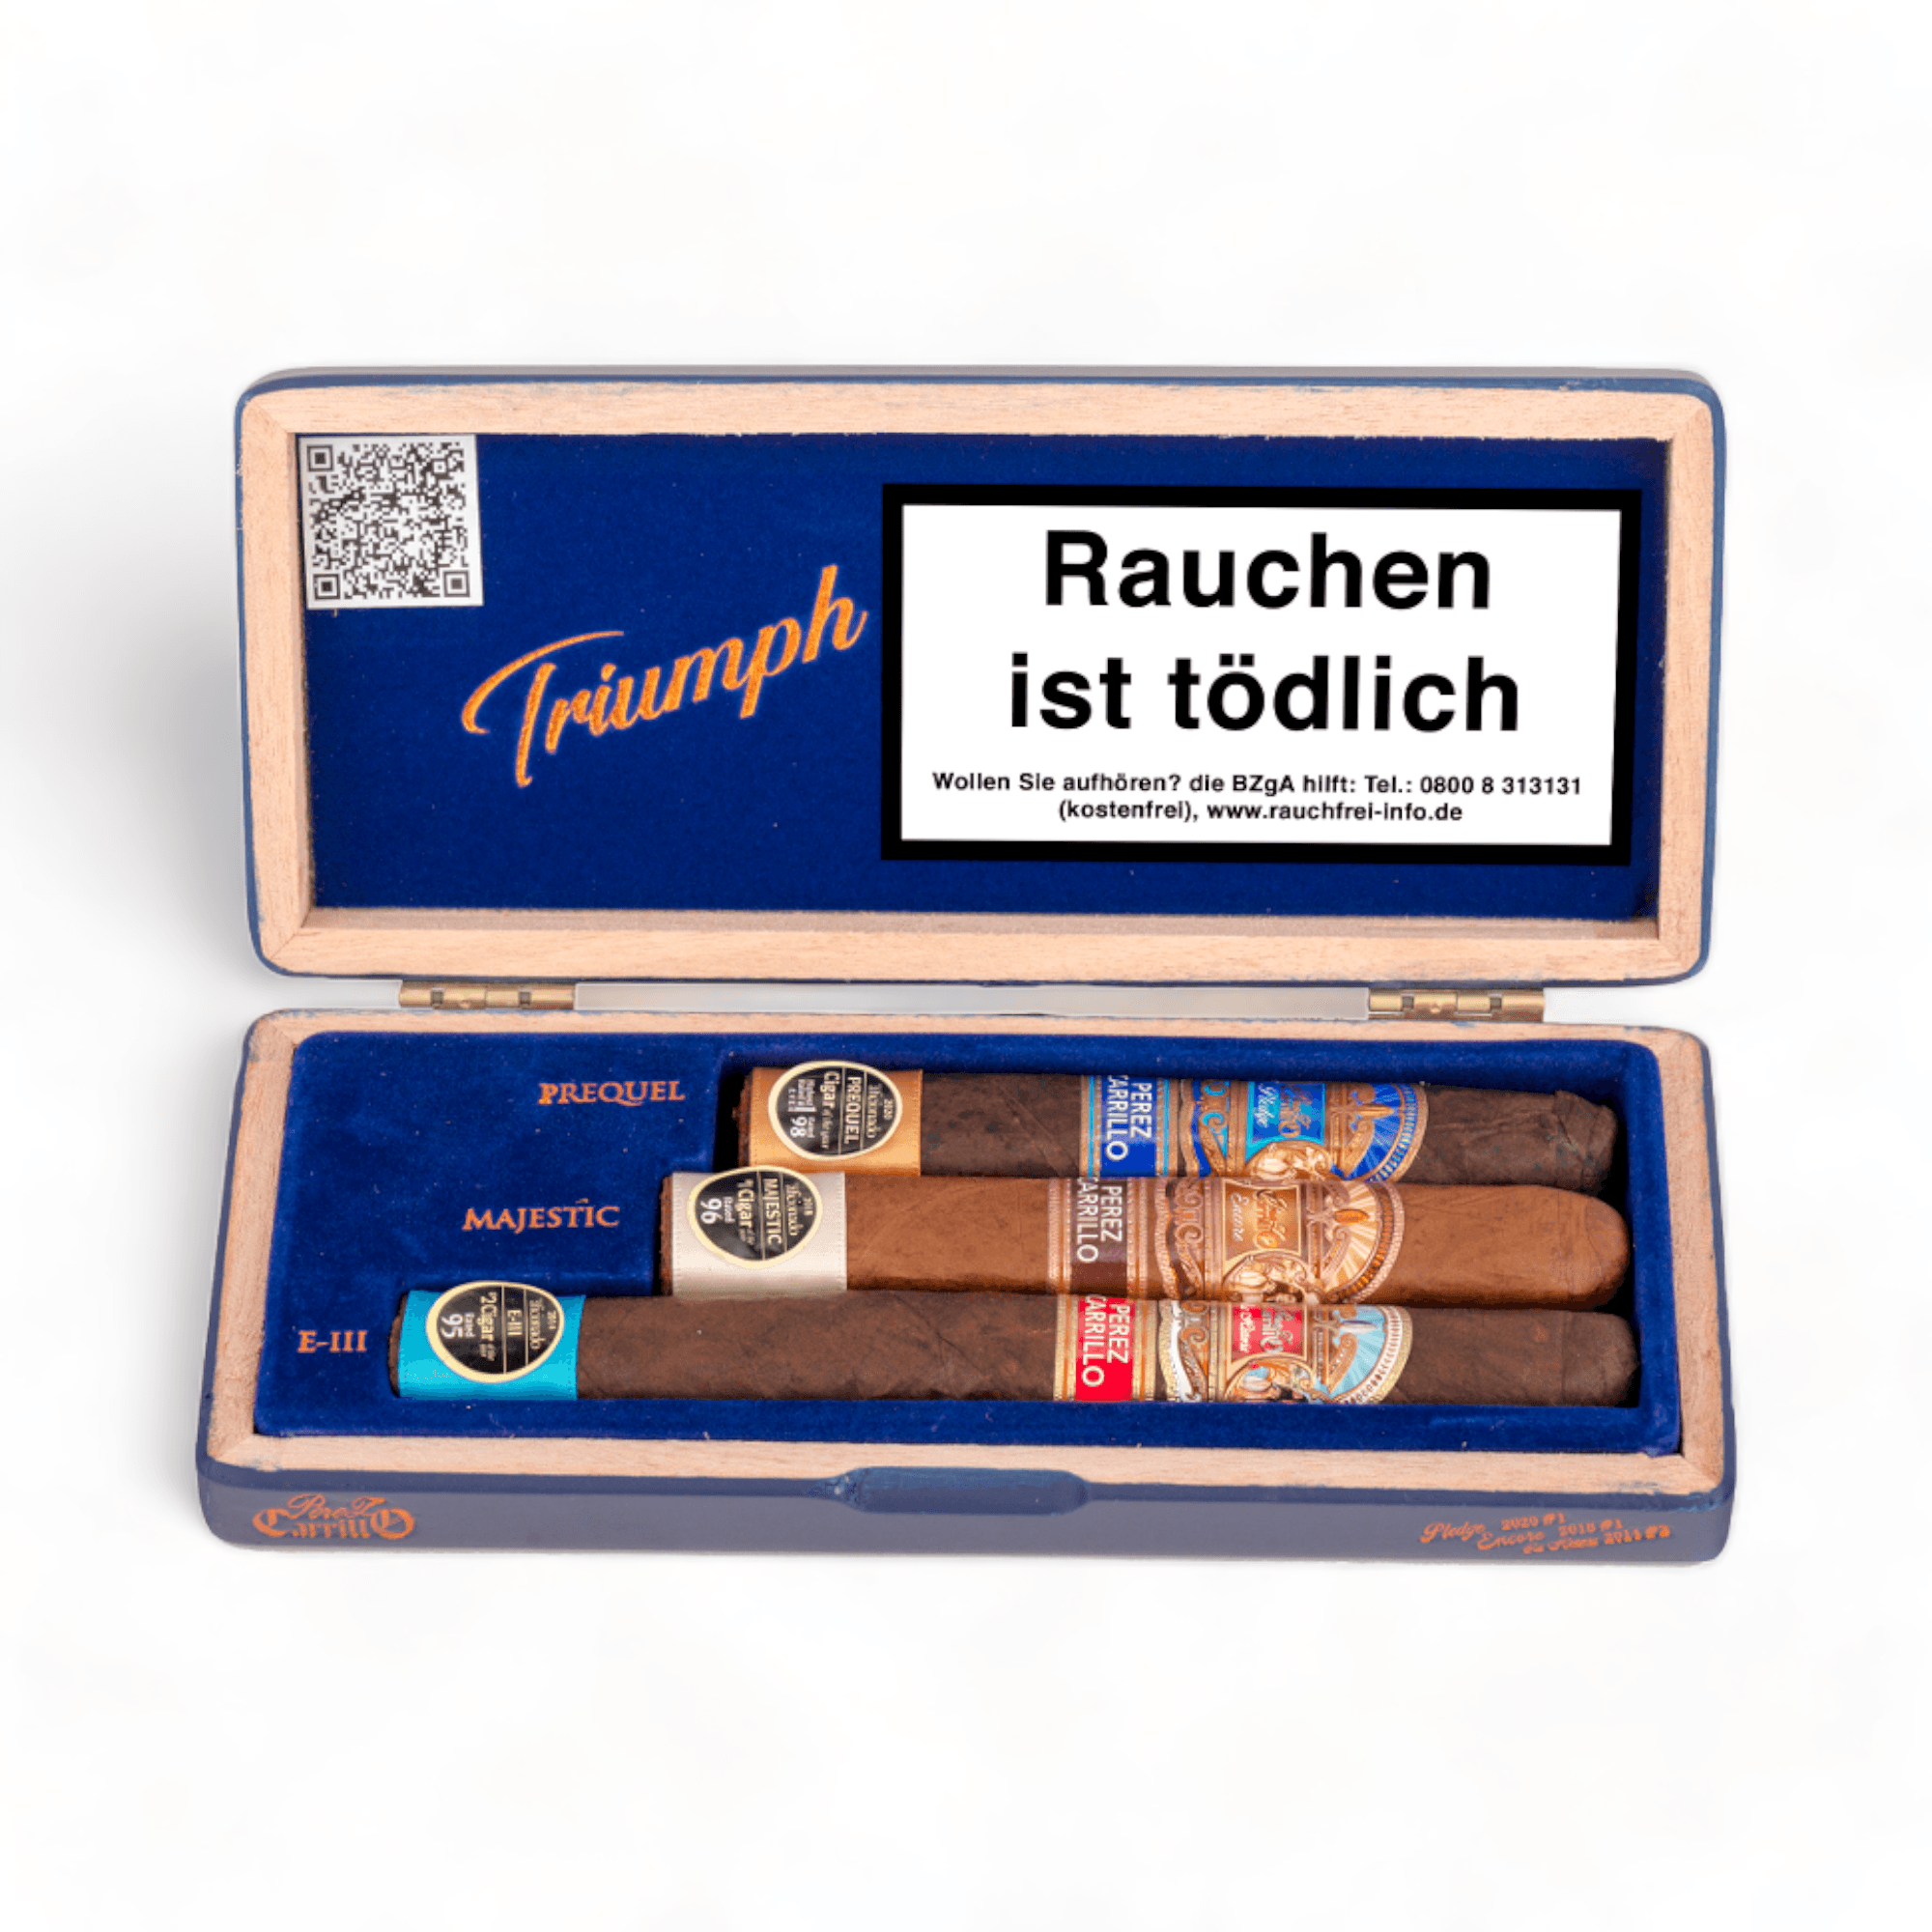 E.P. Carrillo Cigars | Triumph (Prequel+ Majestic+ E-III) Sampler | Box of 3 - hk.cohcigars